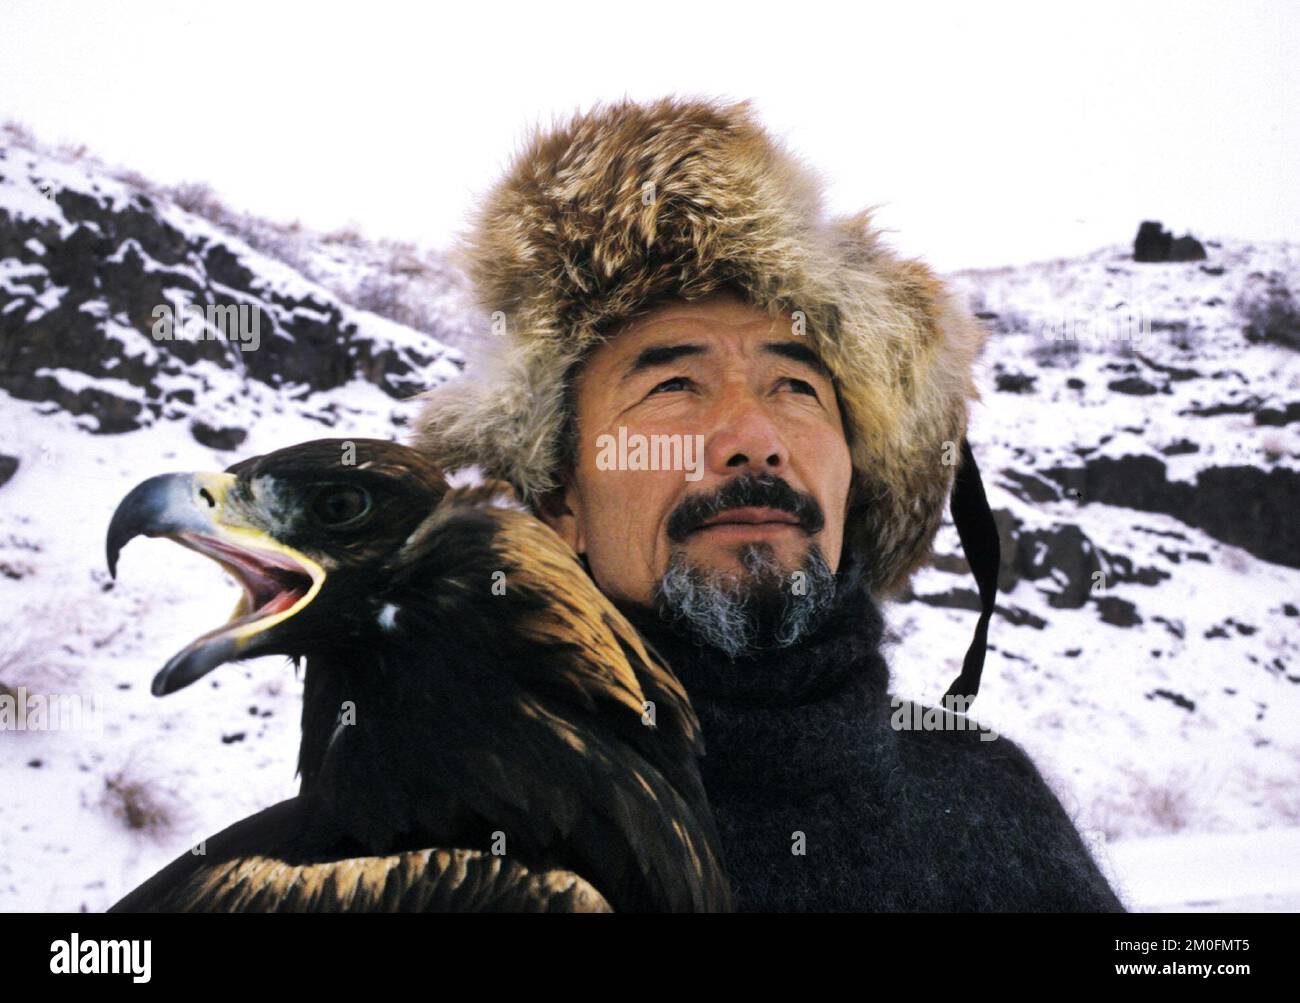 PA PHOTO/POLFOTO - UK USO EXCLUSIVO : KAZAKSTÁN 2002. Los últimos cazadores de águilas del mundo. En Kazakstán un hombre es un hombre cuando puede montar a caballo y cazar con un águila. Lo han hecho de la misma manera durante los últimos 4000 años. Foto de stock